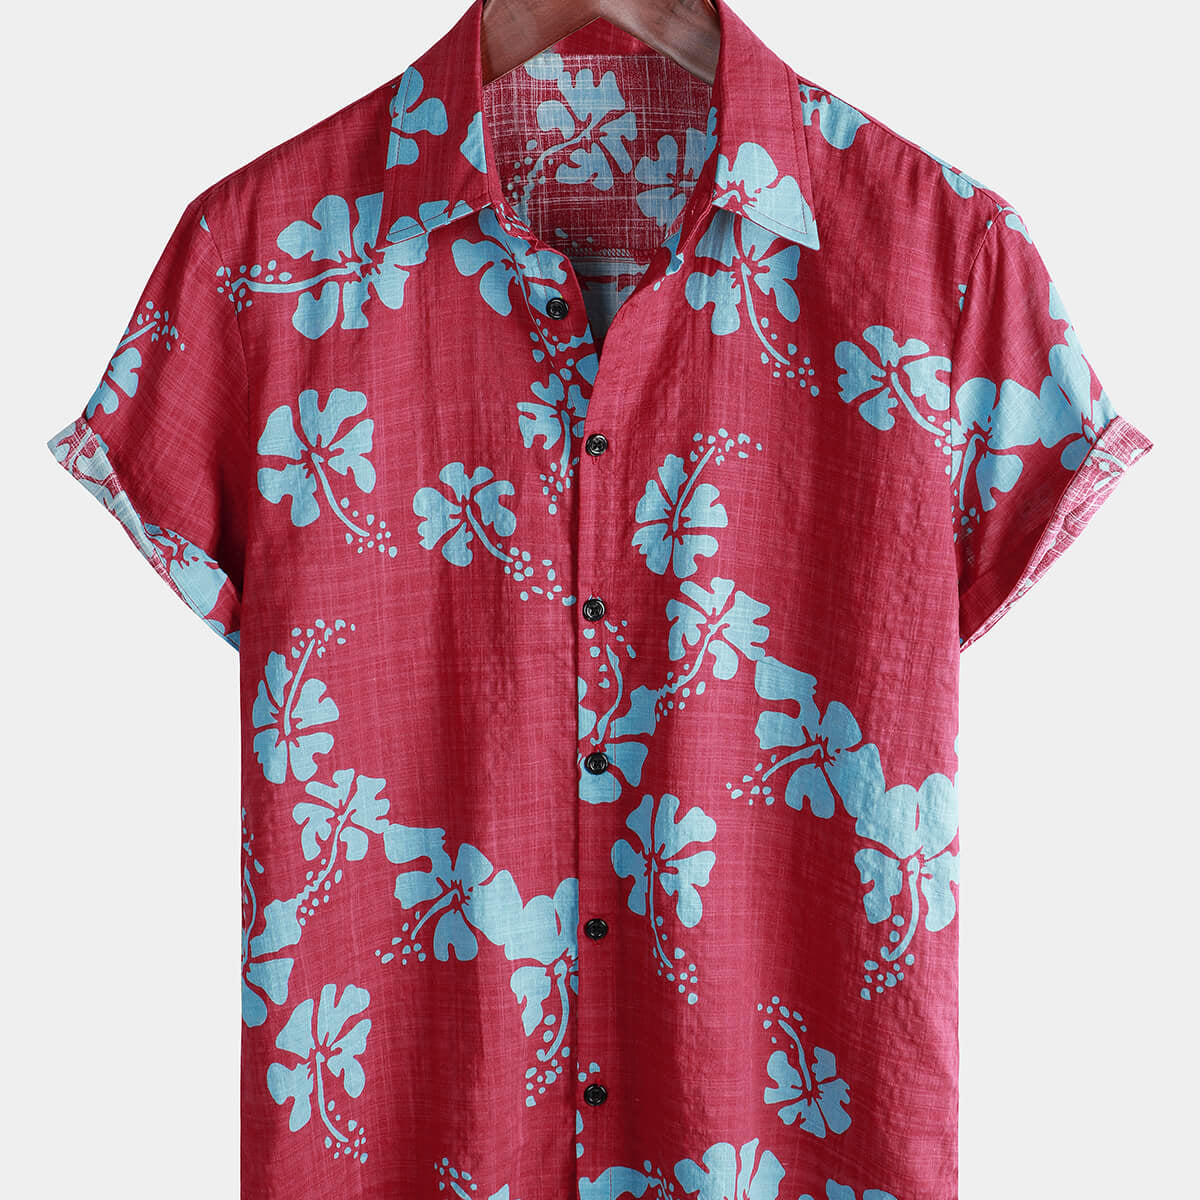 Chemise hawaïenne tropicale à manches courtes pour hommes, boutons floraux rouges, plage